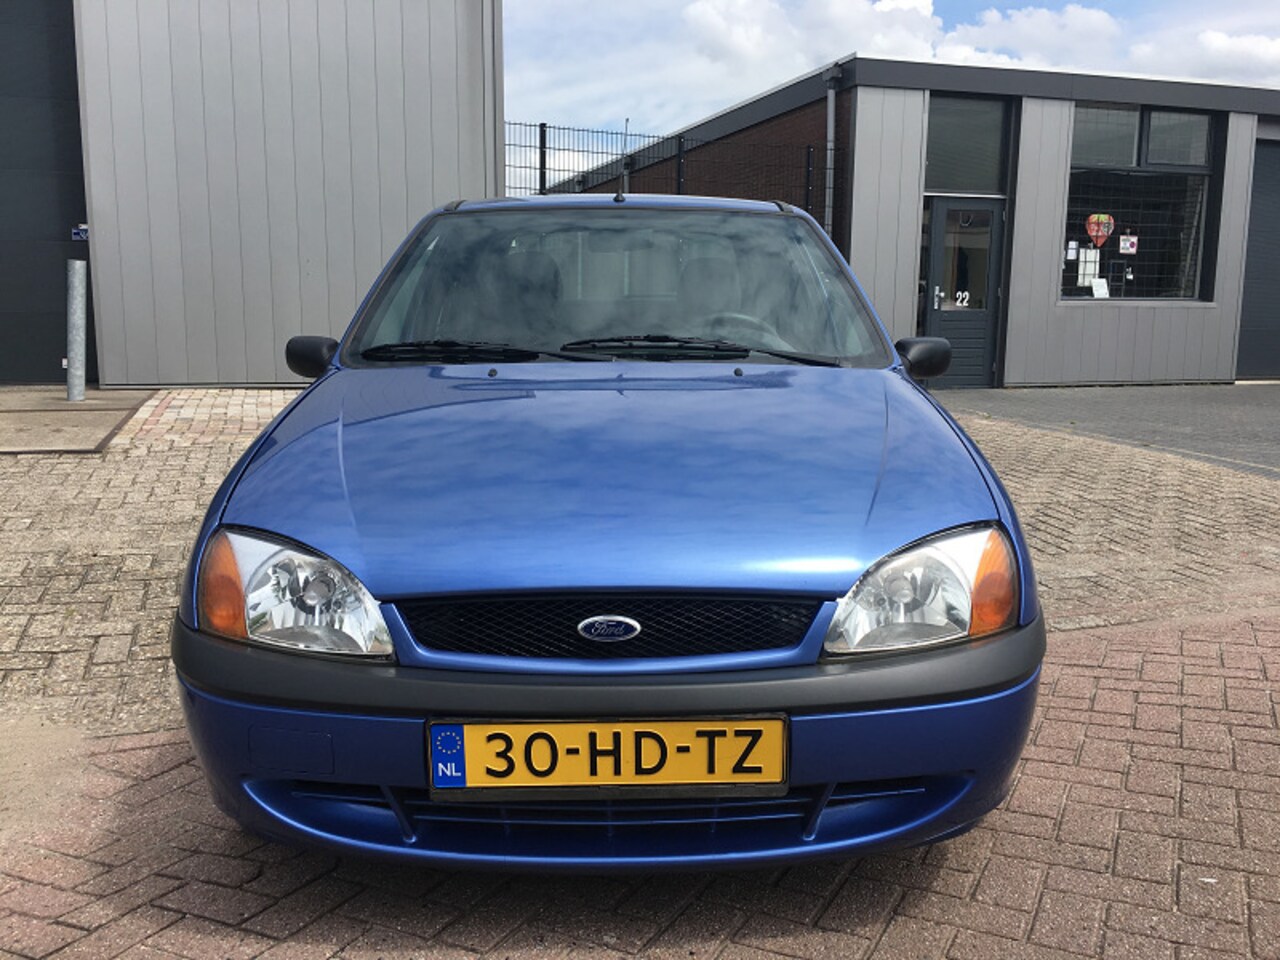 Kolonel procent koolstof Ford Fiesta 1.3i d'Eco 2001 Benzine - Occasion te koop op AutoWereld.nl